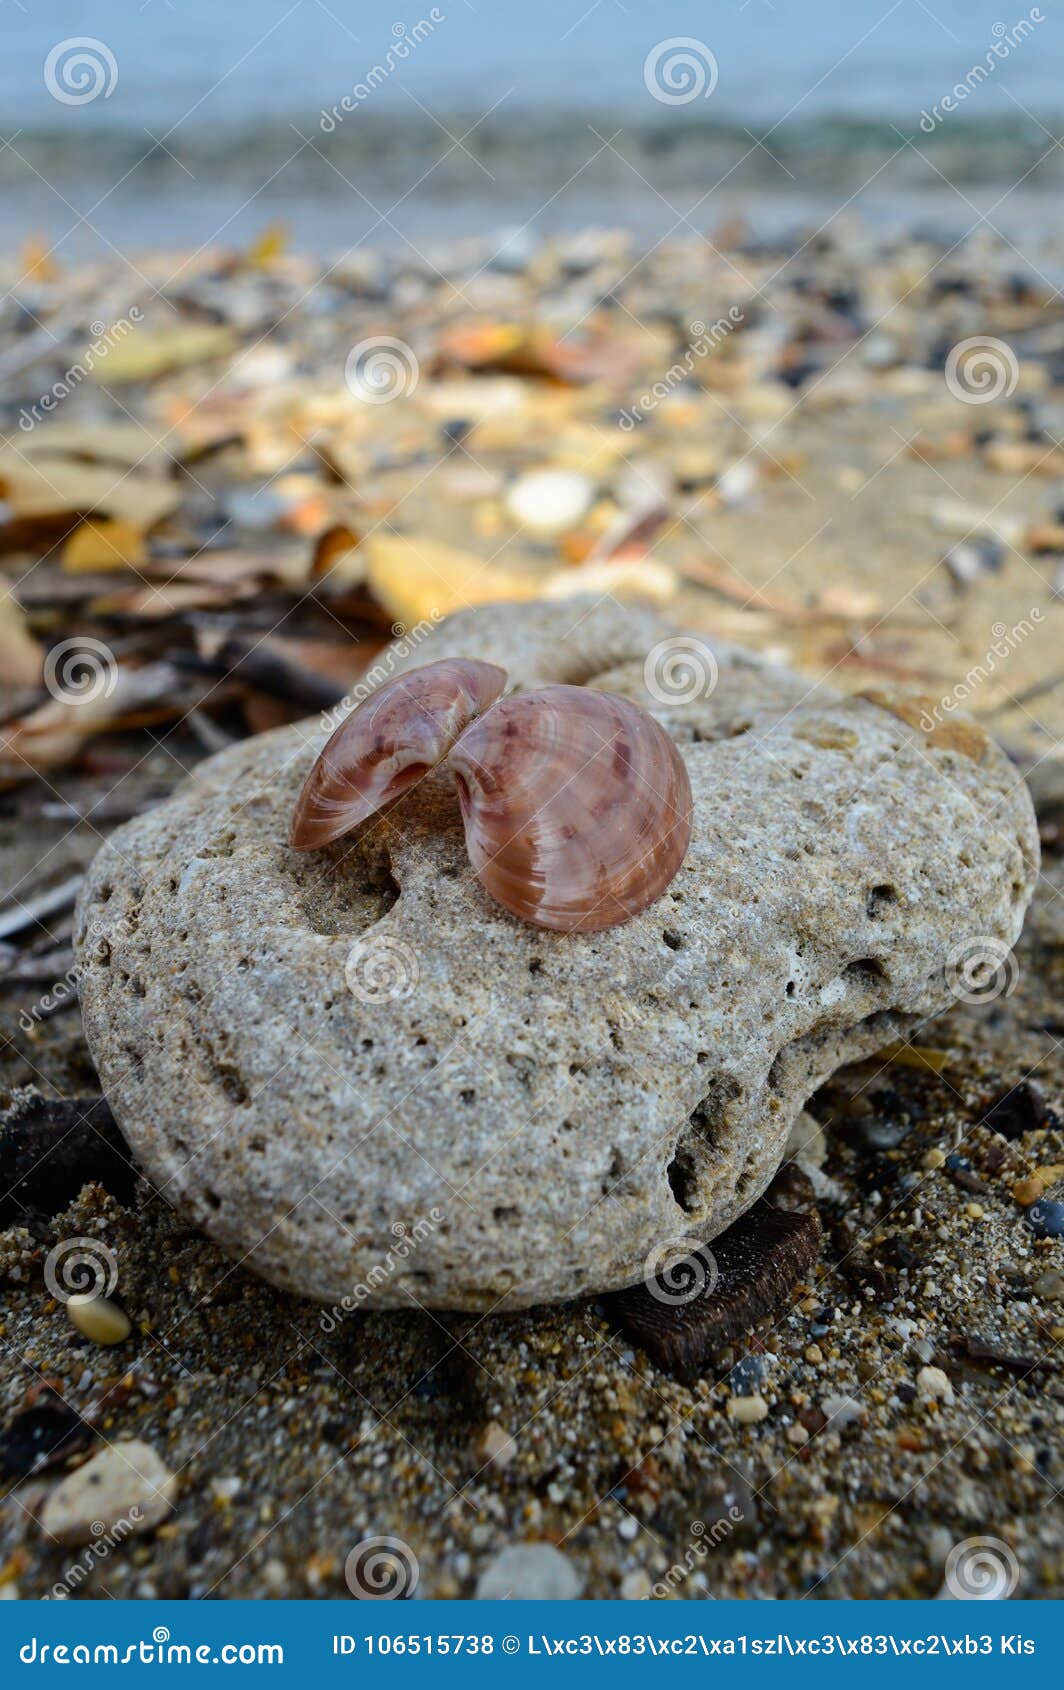 岩石和壳在海滩科孚岛. 一个岩石的特写镜头宏观图片与壳的对此在科孚岛海滩